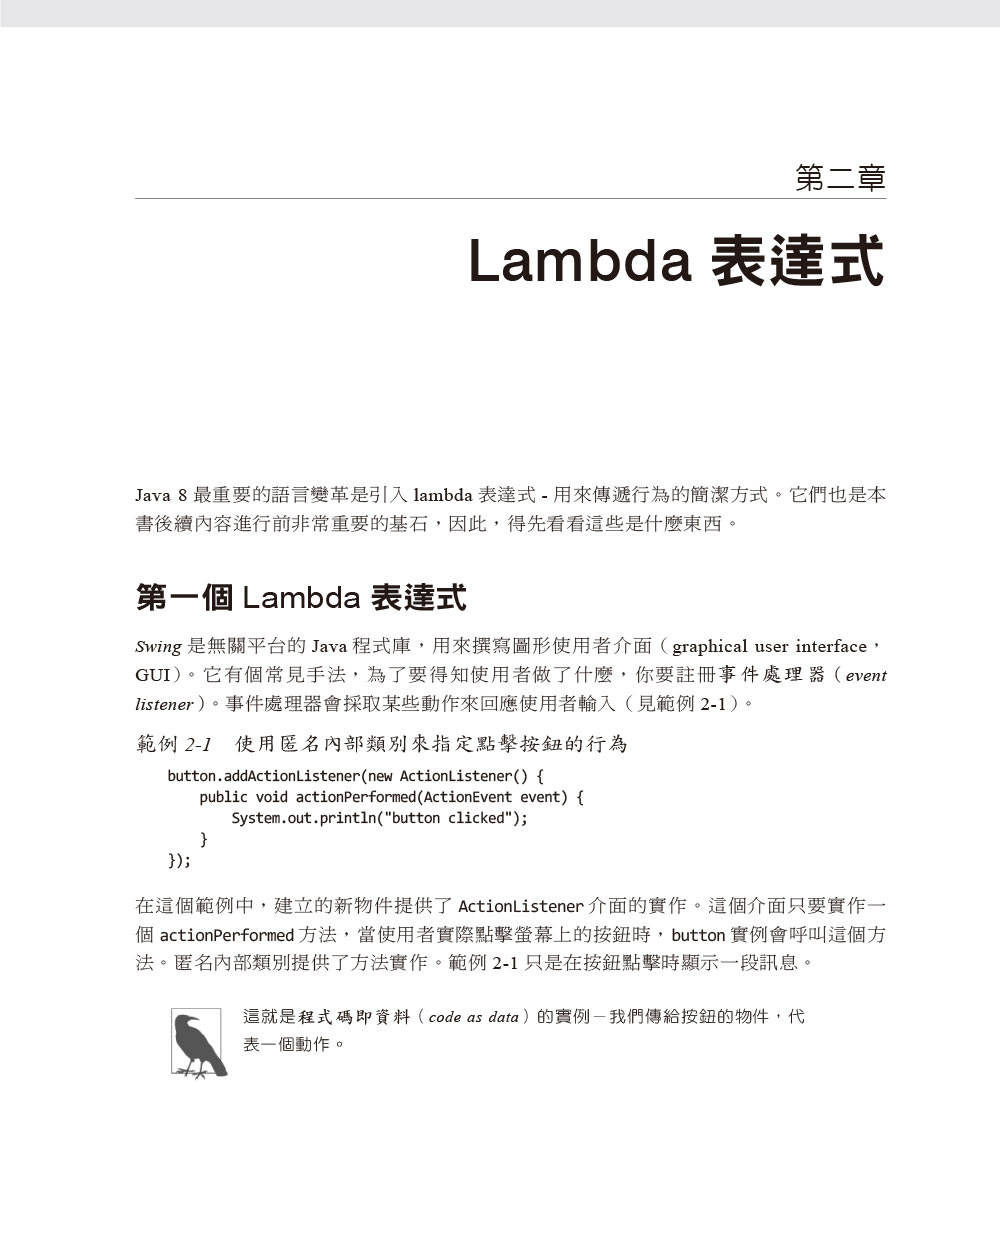 ►GO►最新優惠► 【書籍】Java 8 Lambdas 技術手冊